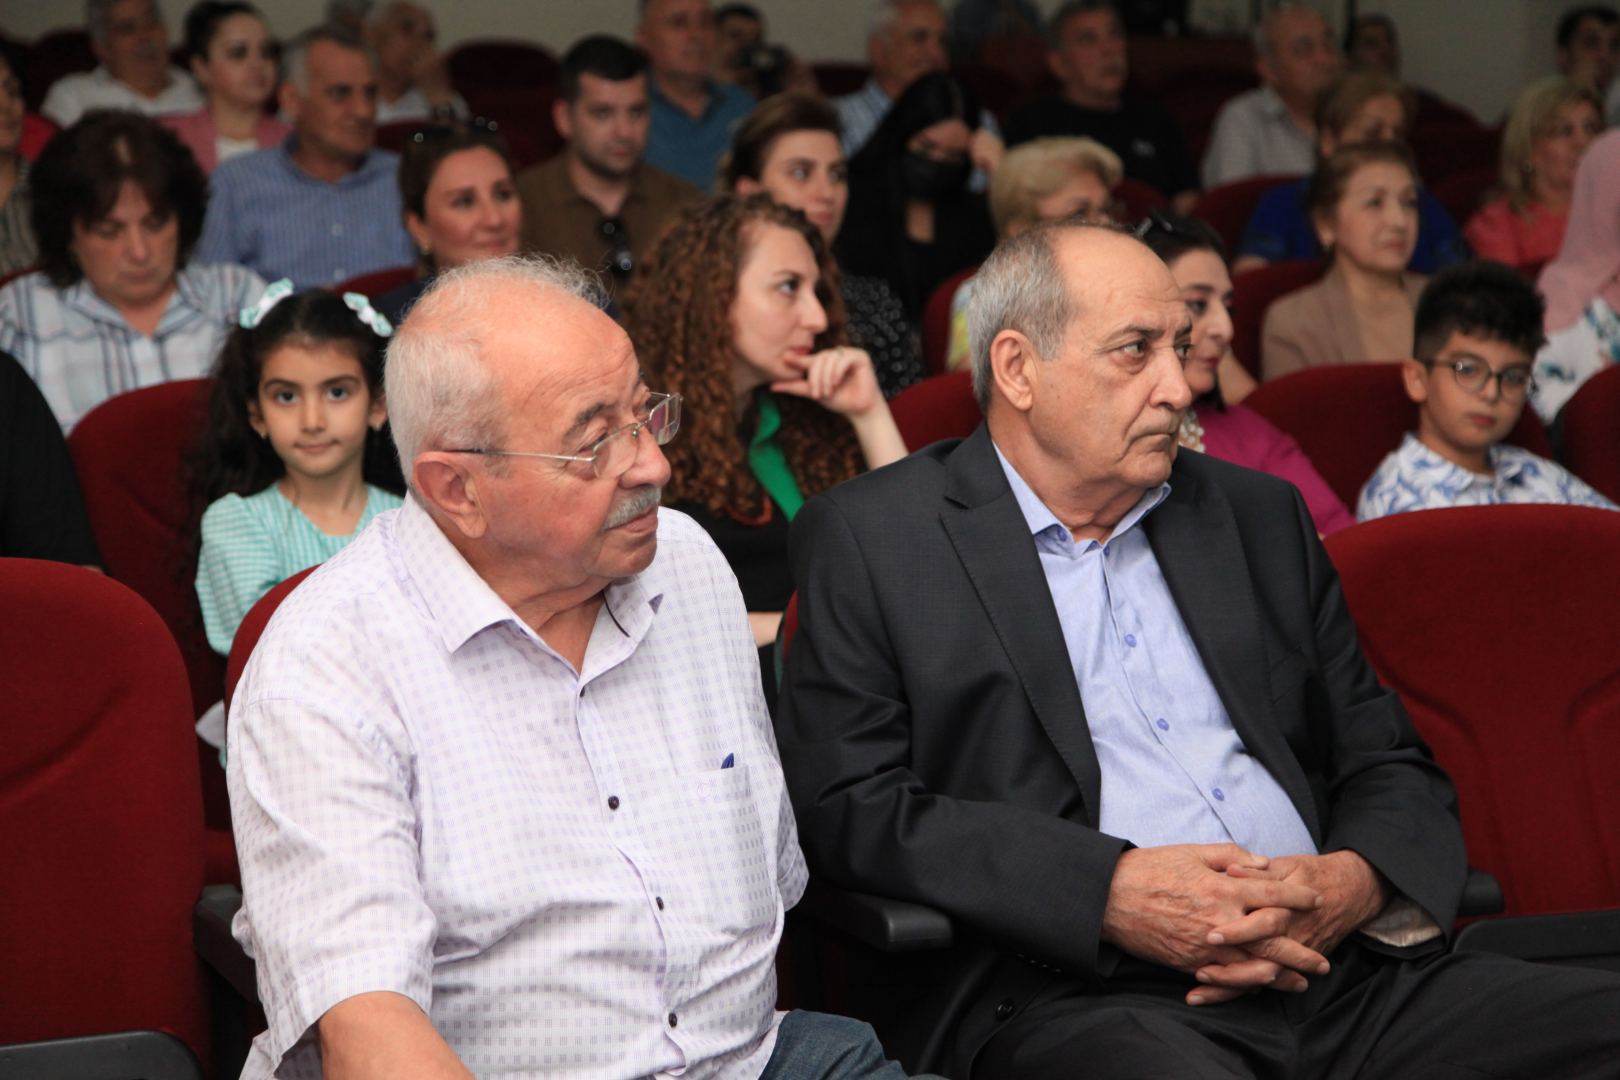 В Баку прошло мероприятие, посвященное памяти Талята Рахманова - его называли мастером эпизода (ФОТО)